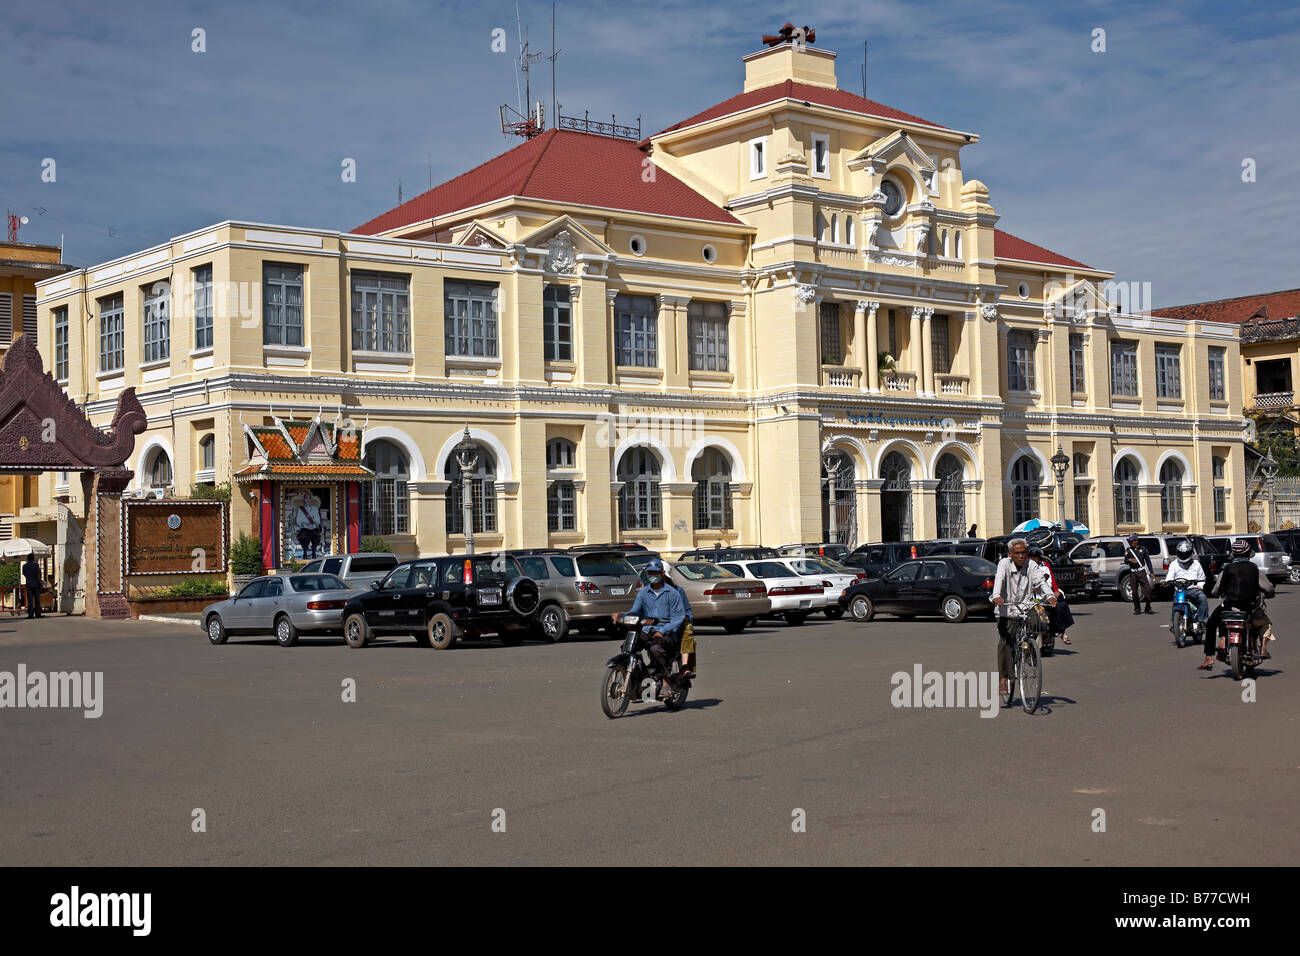 Bureau de poste Phnom Penh Cambodge, bâtiment historique symbolisant l'ère coloniale française avec sa magnifique et grande façade. S. E. Asie Banque D'Images